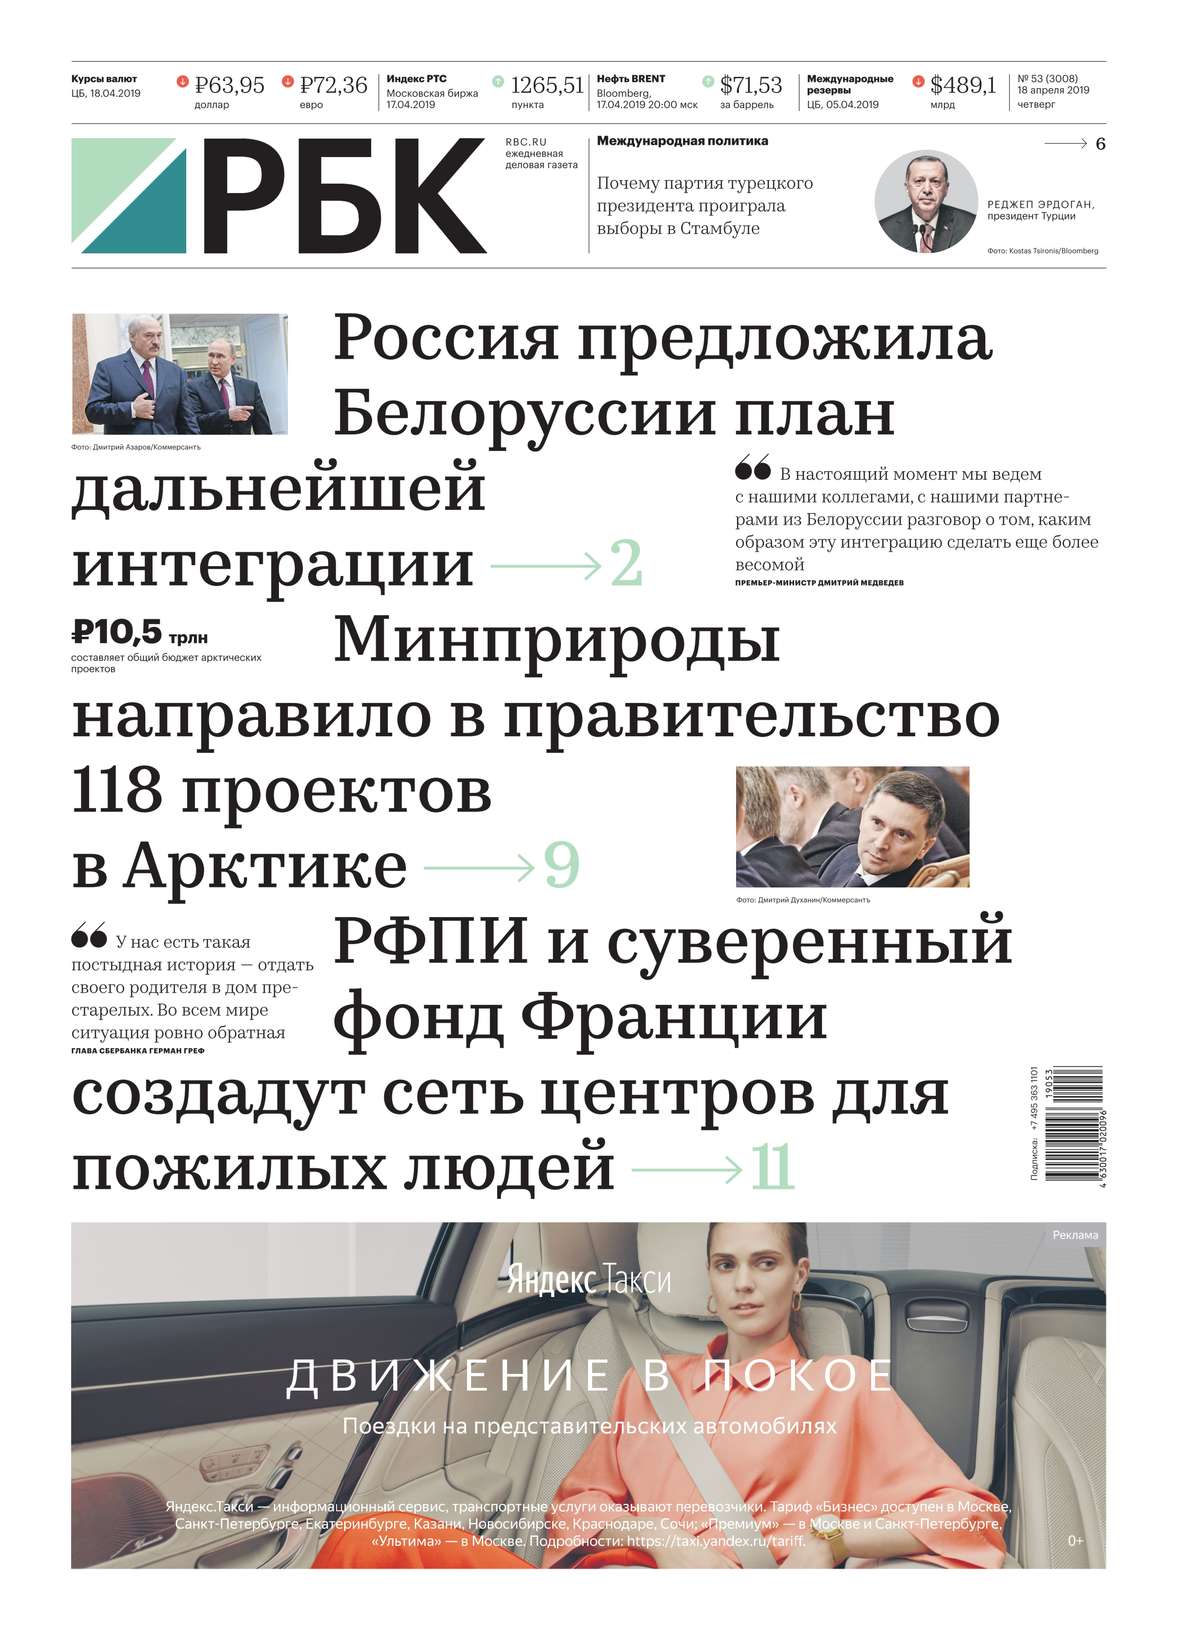 Новости газеты рбк